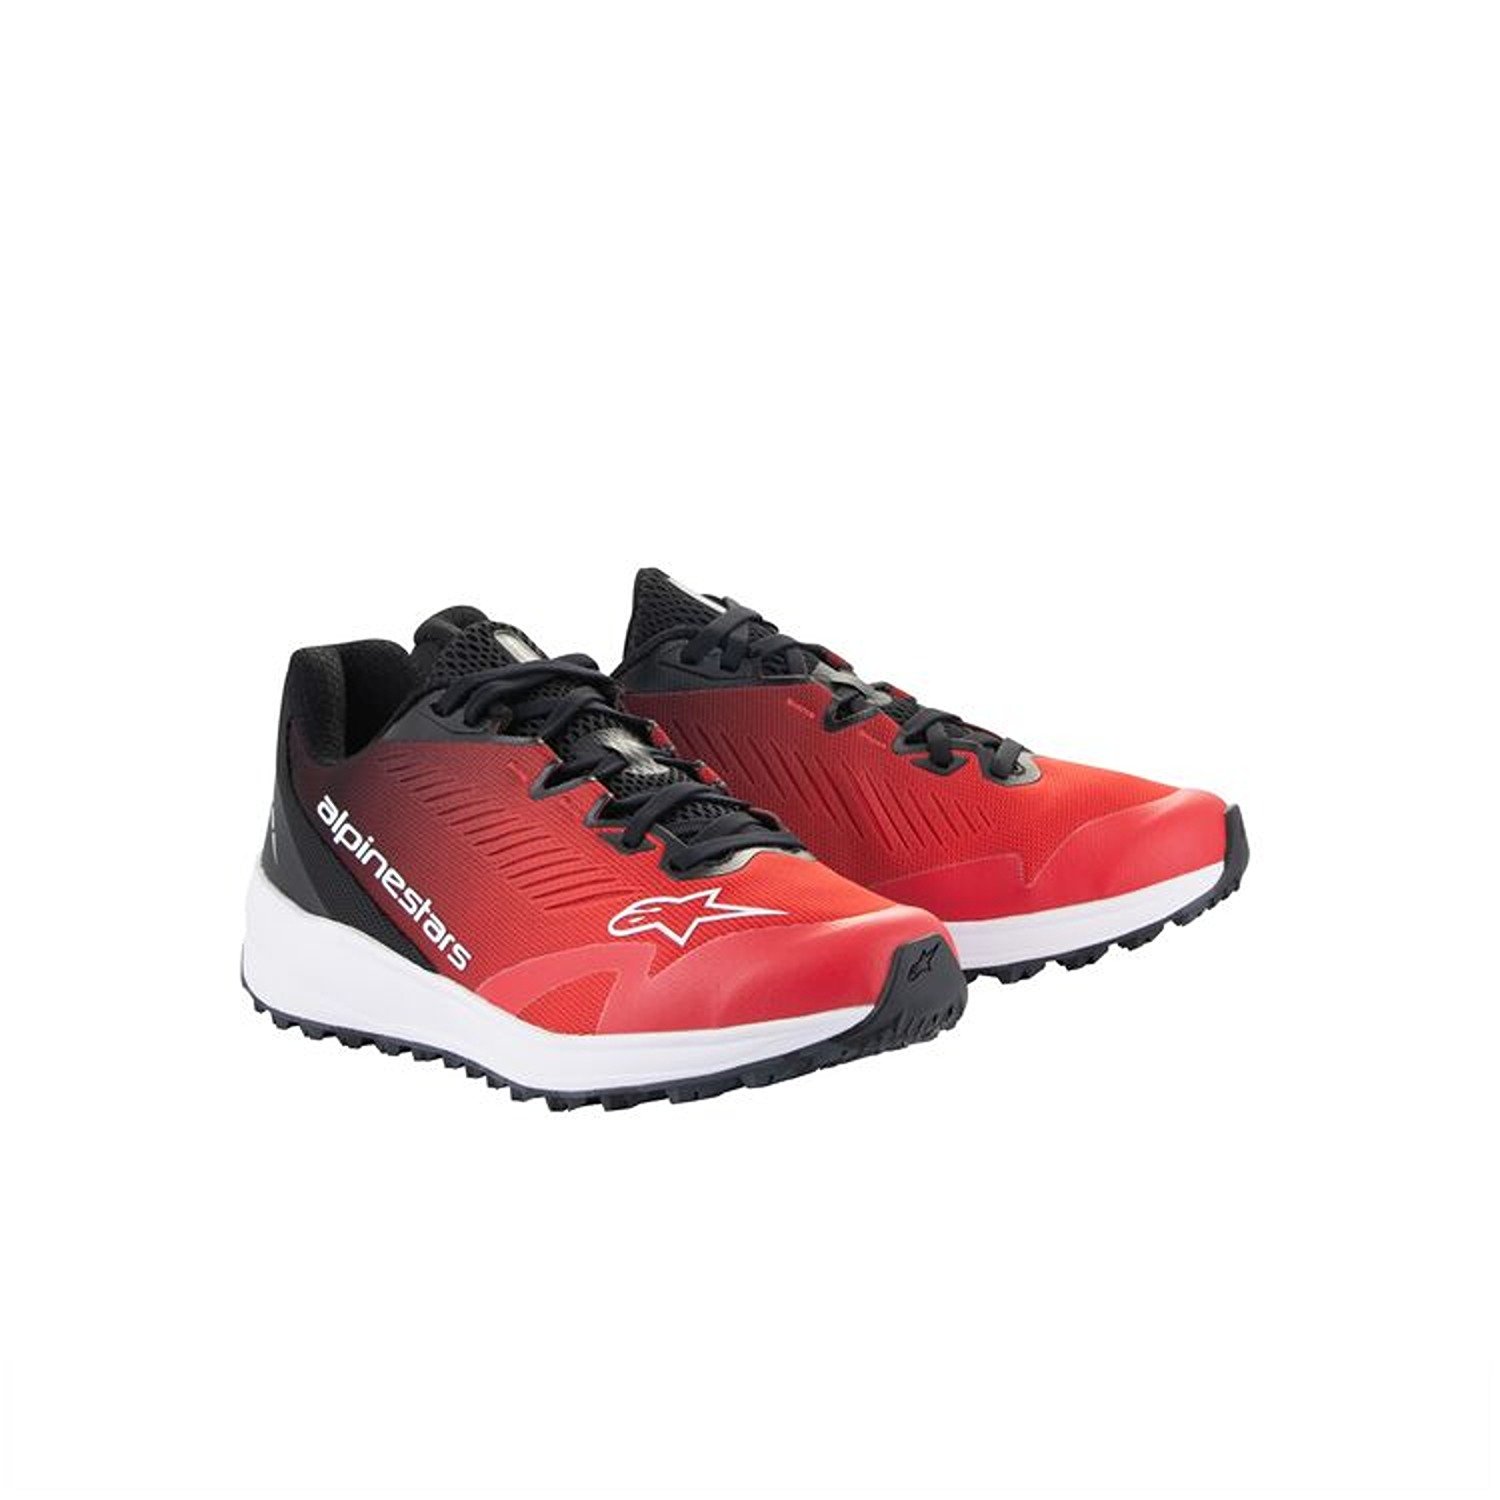 Image of Alpinestars Meta Road V2 Shoes Red Black White Größe US 125